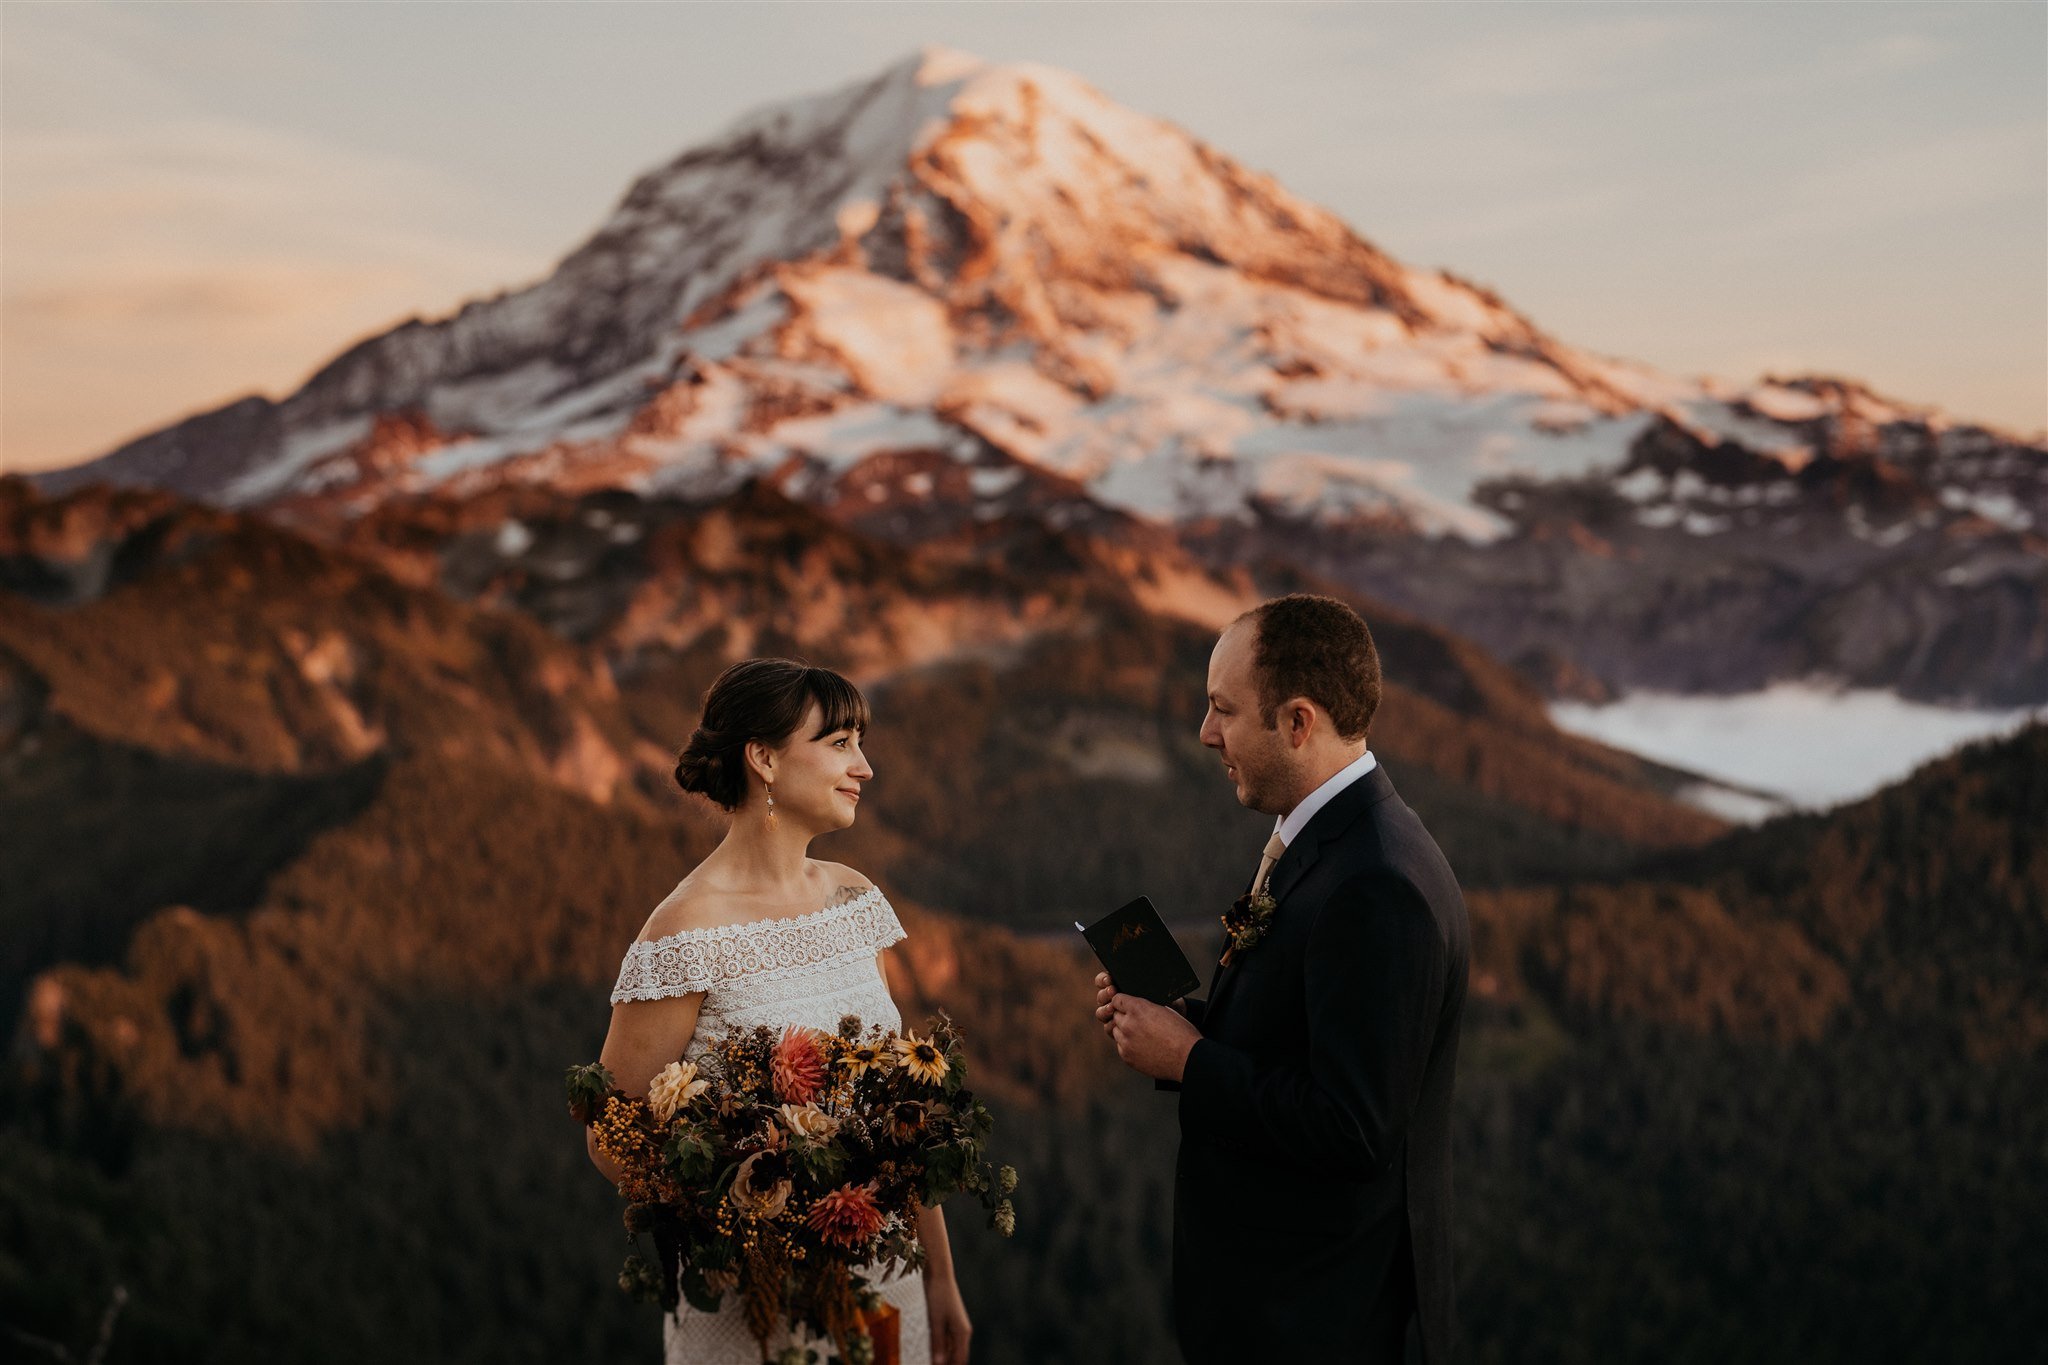 Groom reads vows to bride at autumn wedding in Mt Rainier